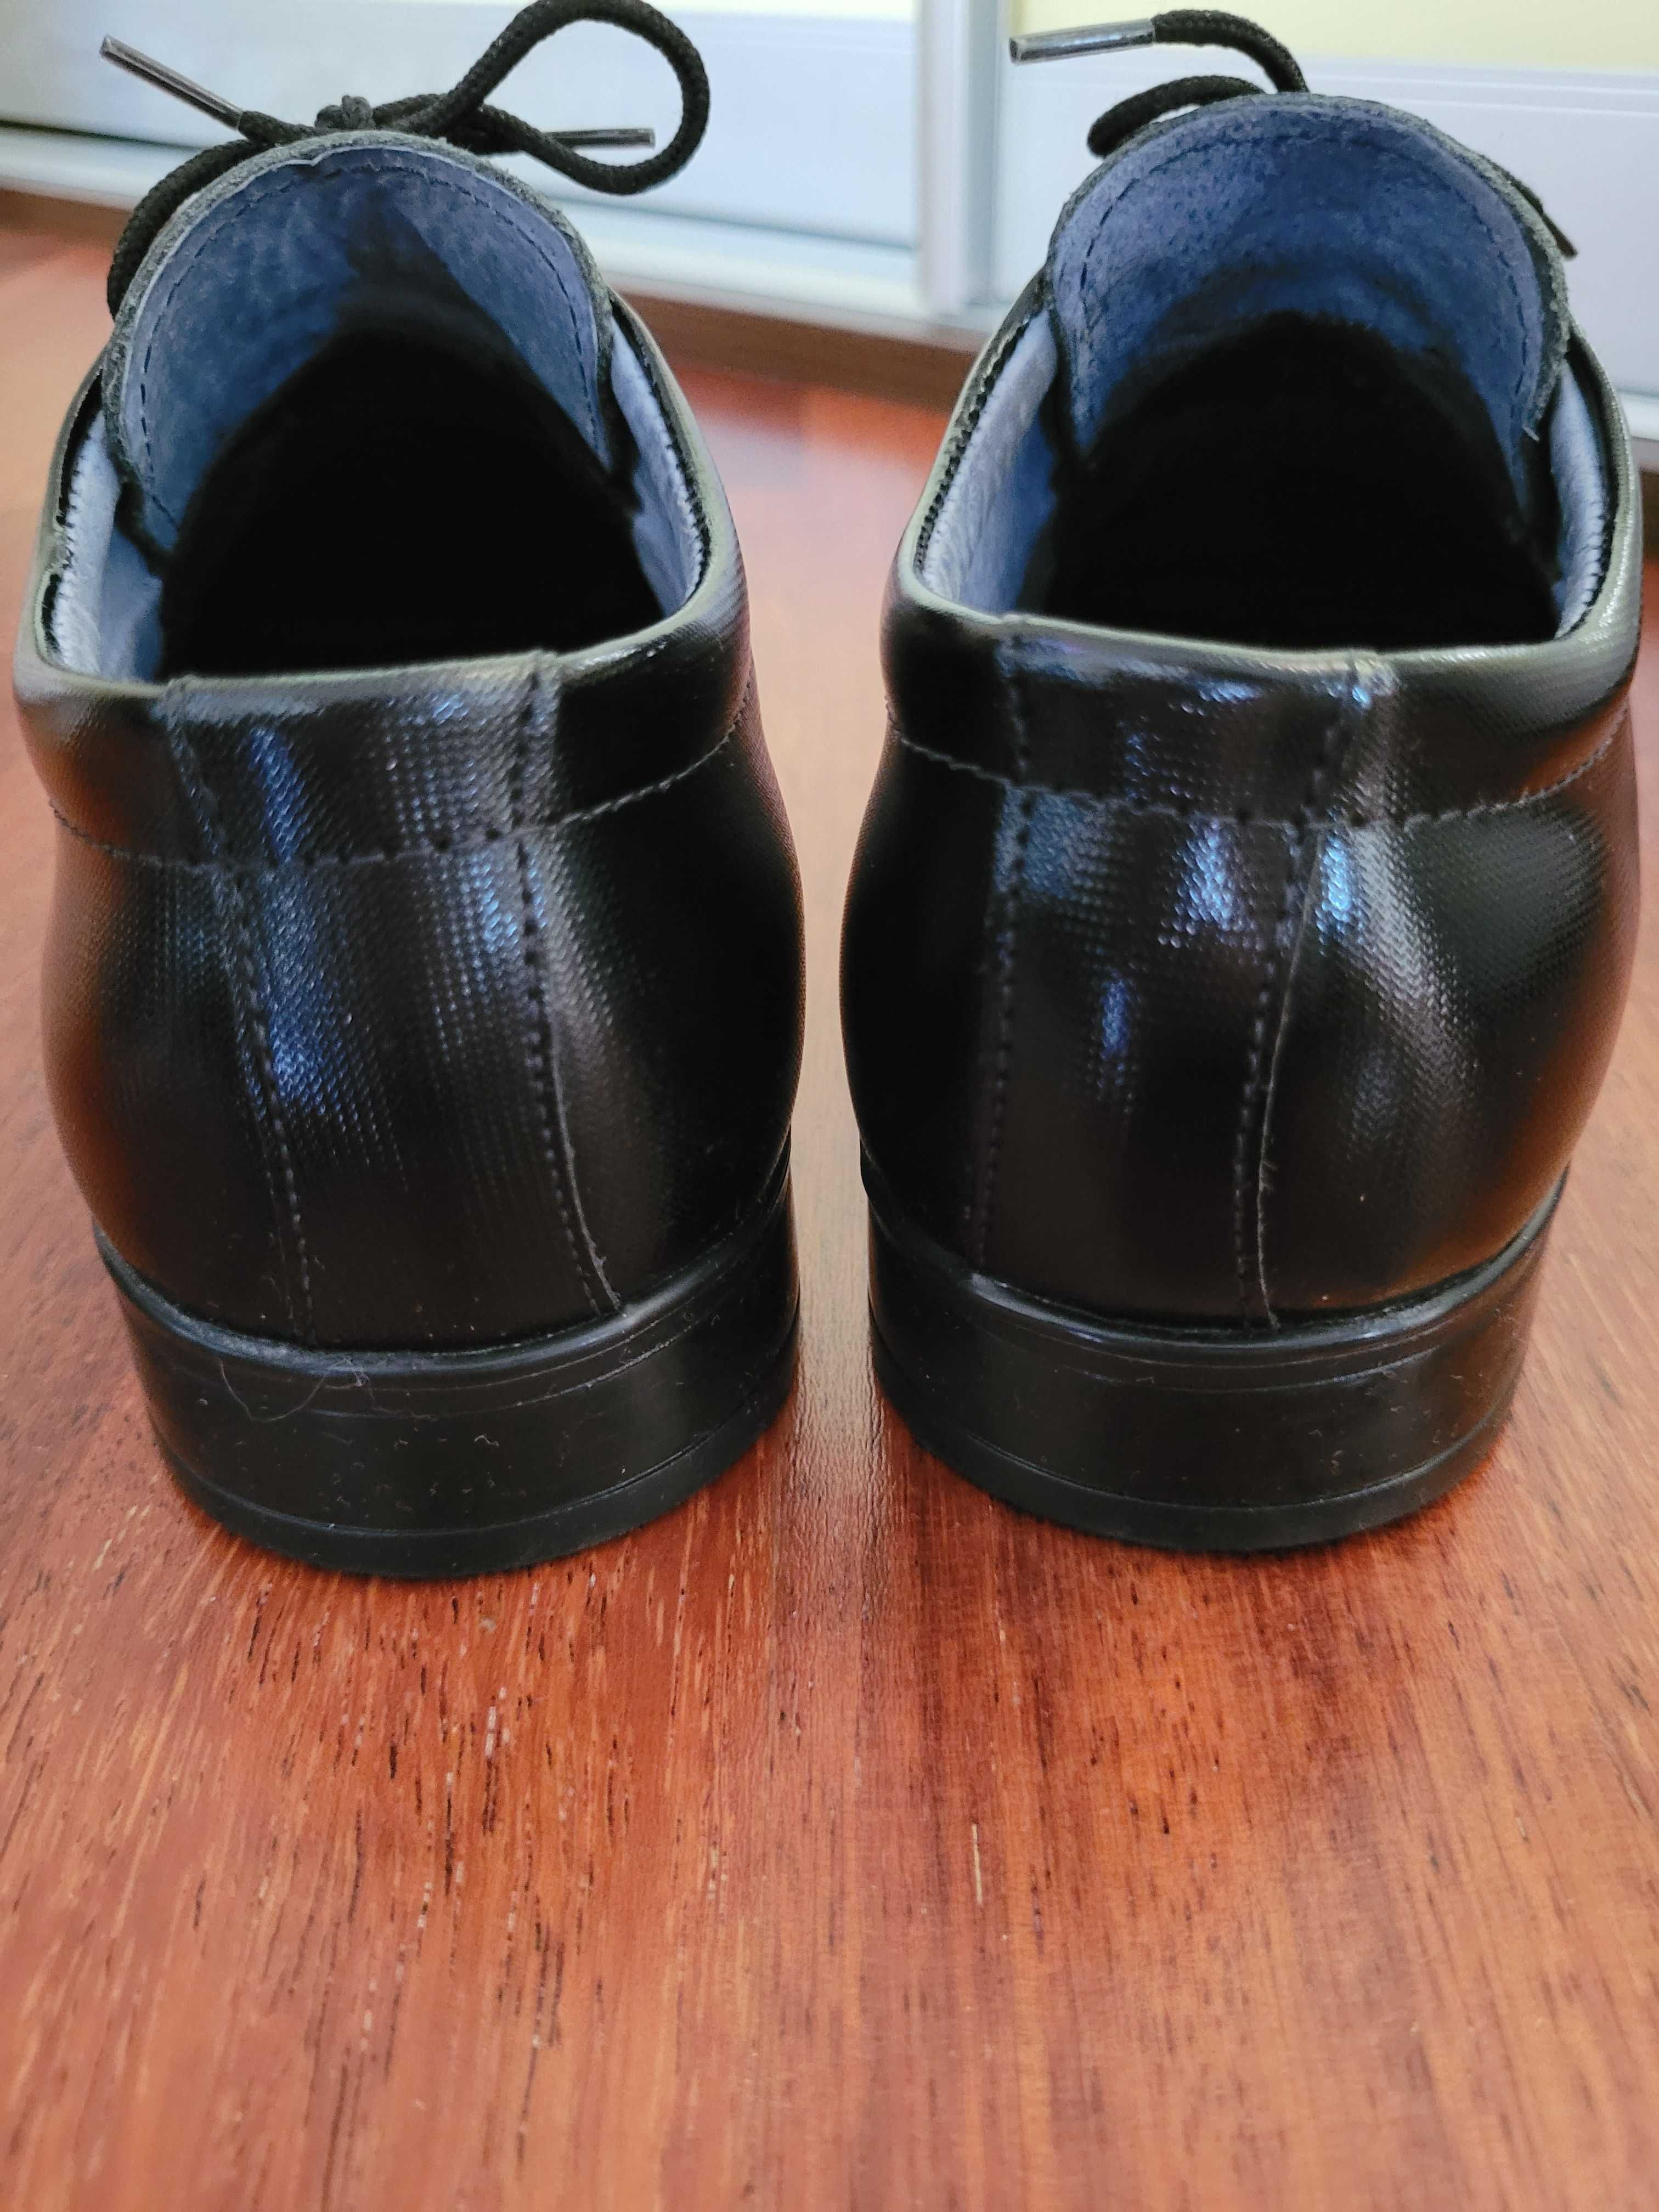 Pantofle skórzane chłopięce